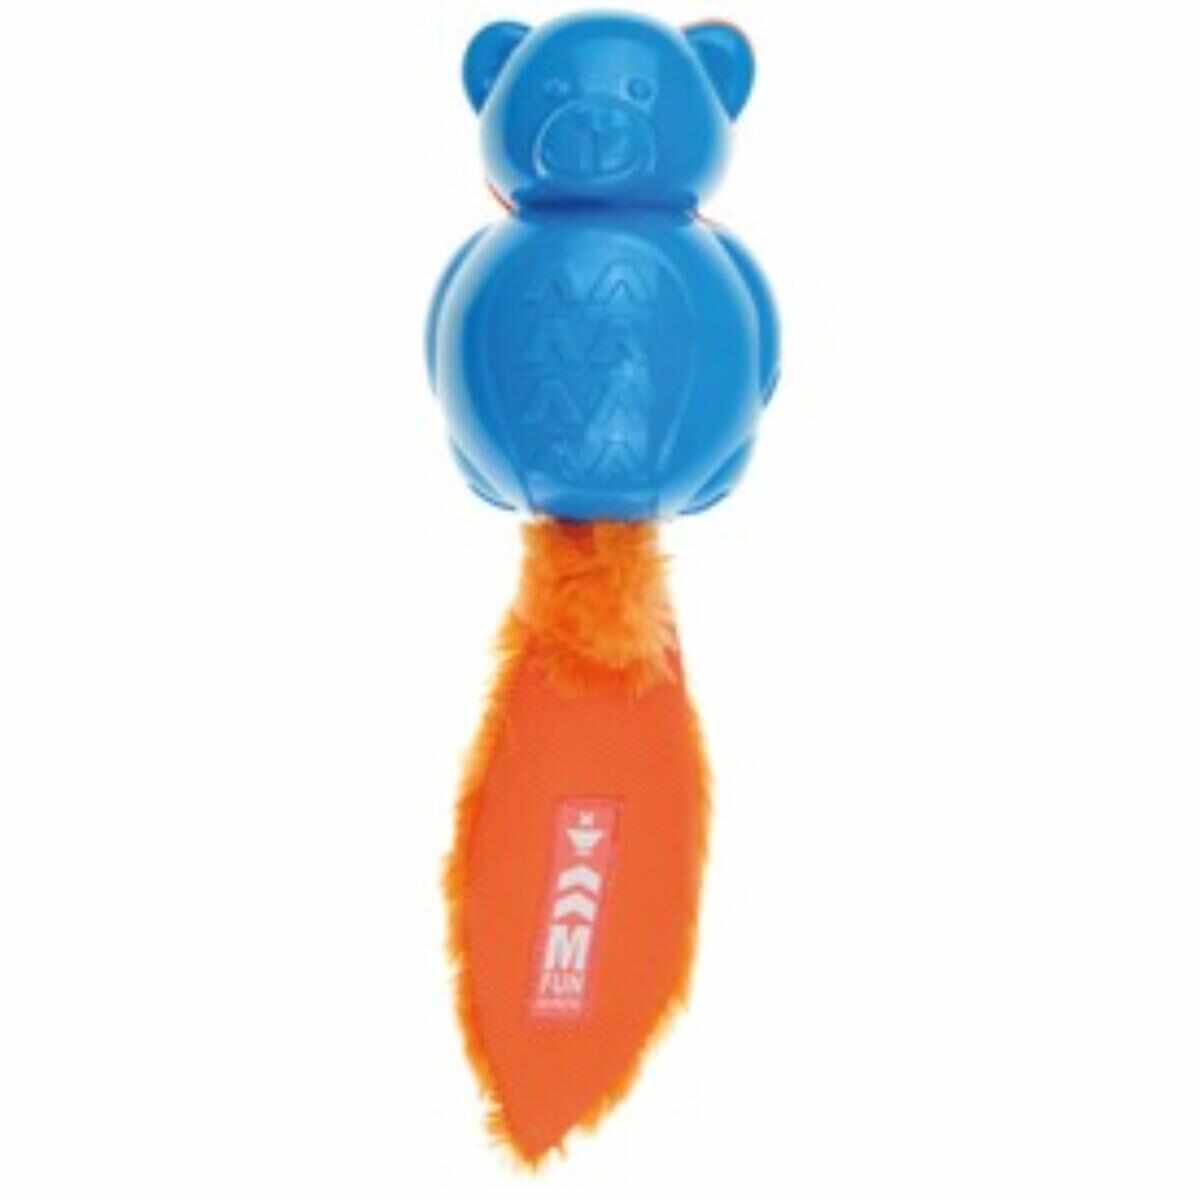 M-PETS Teddy On/Off, jucărie interactivă câini, cu sunet, cauciuc M-PETS Teddy On/Off, jucărie interactivă câini S-M, cu sunet, cauciuc, albastru și portocaliu, 30x8.5x9.2cm